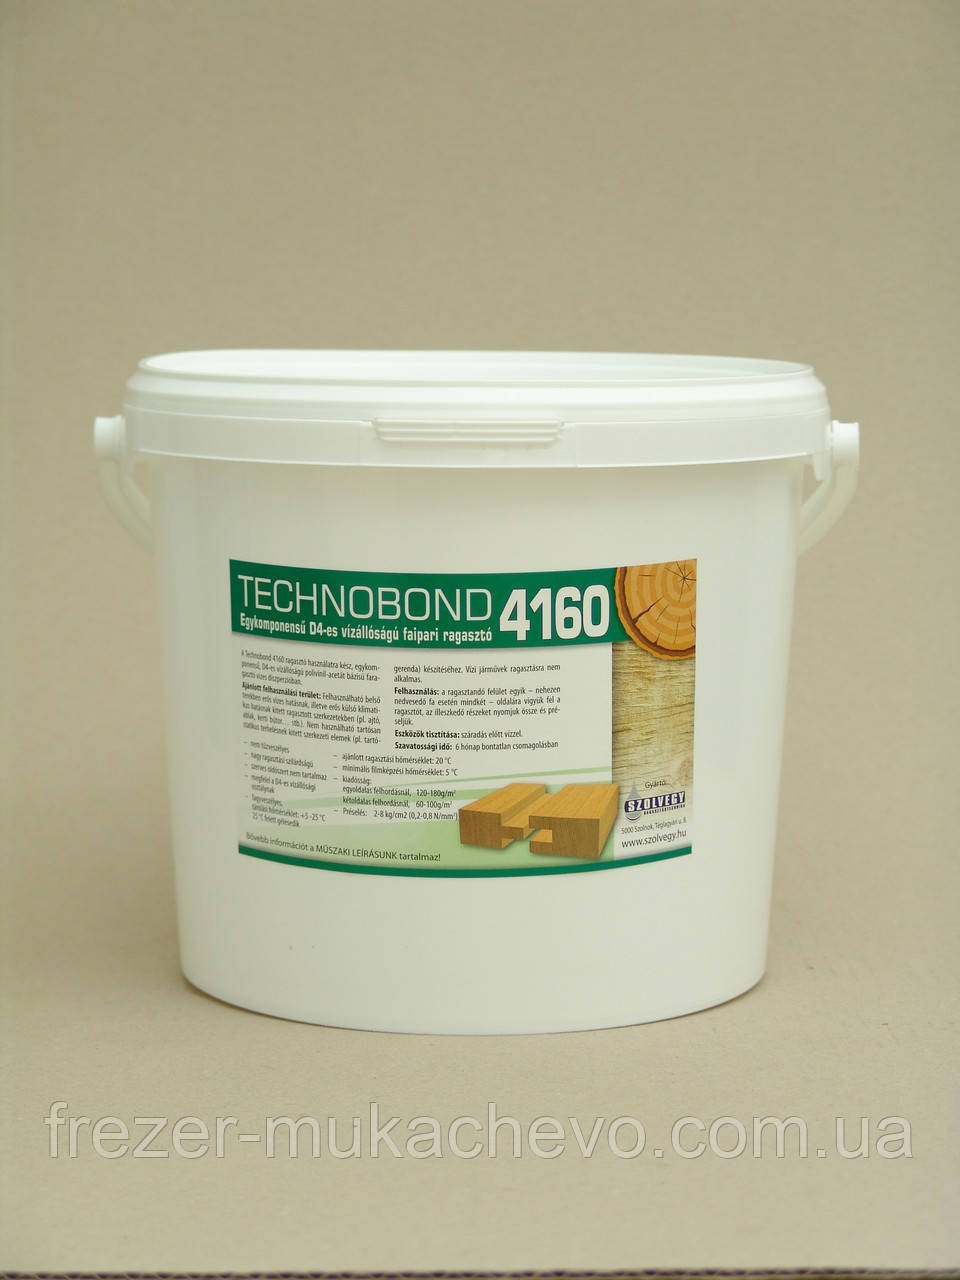 Technobond 4160/1kD4 5 кг